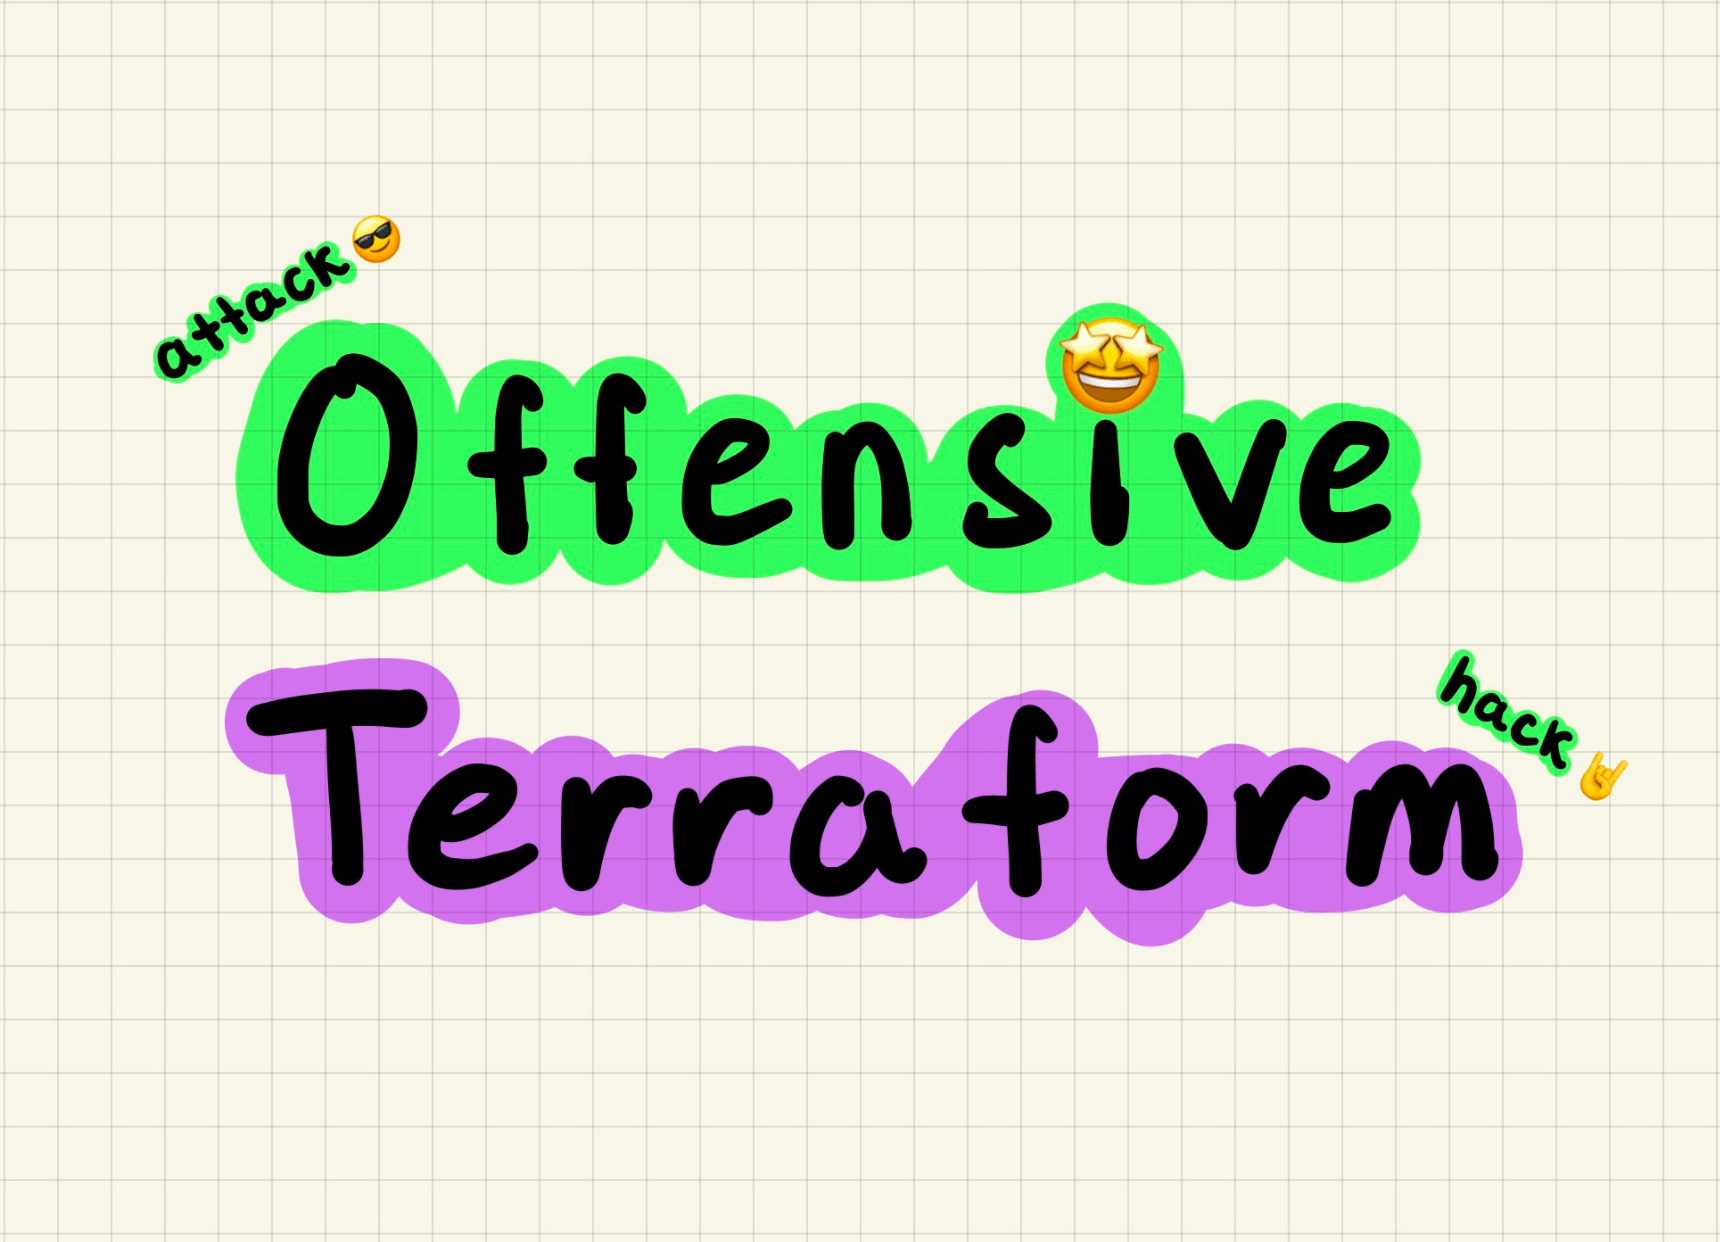 Offensive Terraform